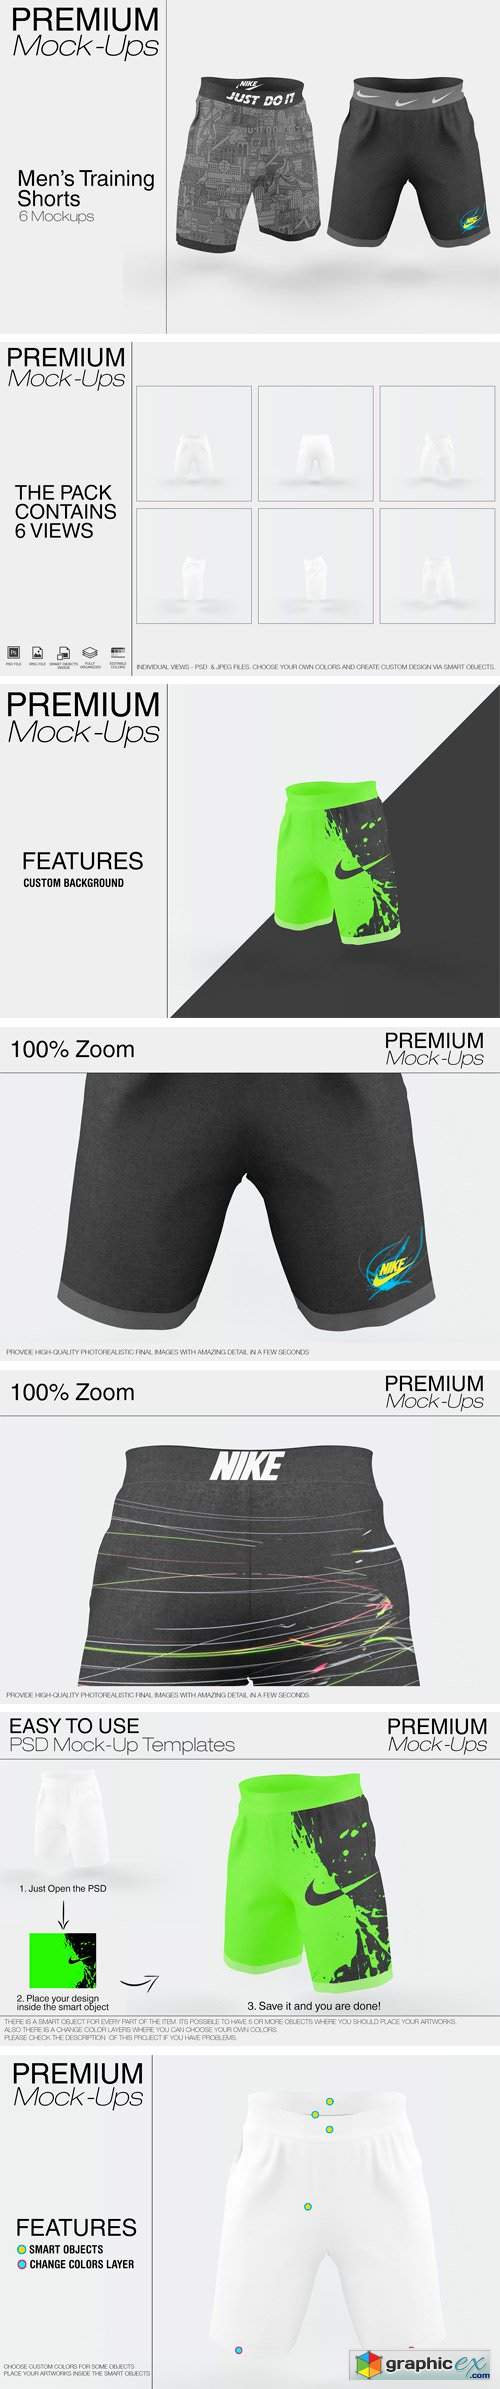 Men's Training Shorts Mockup